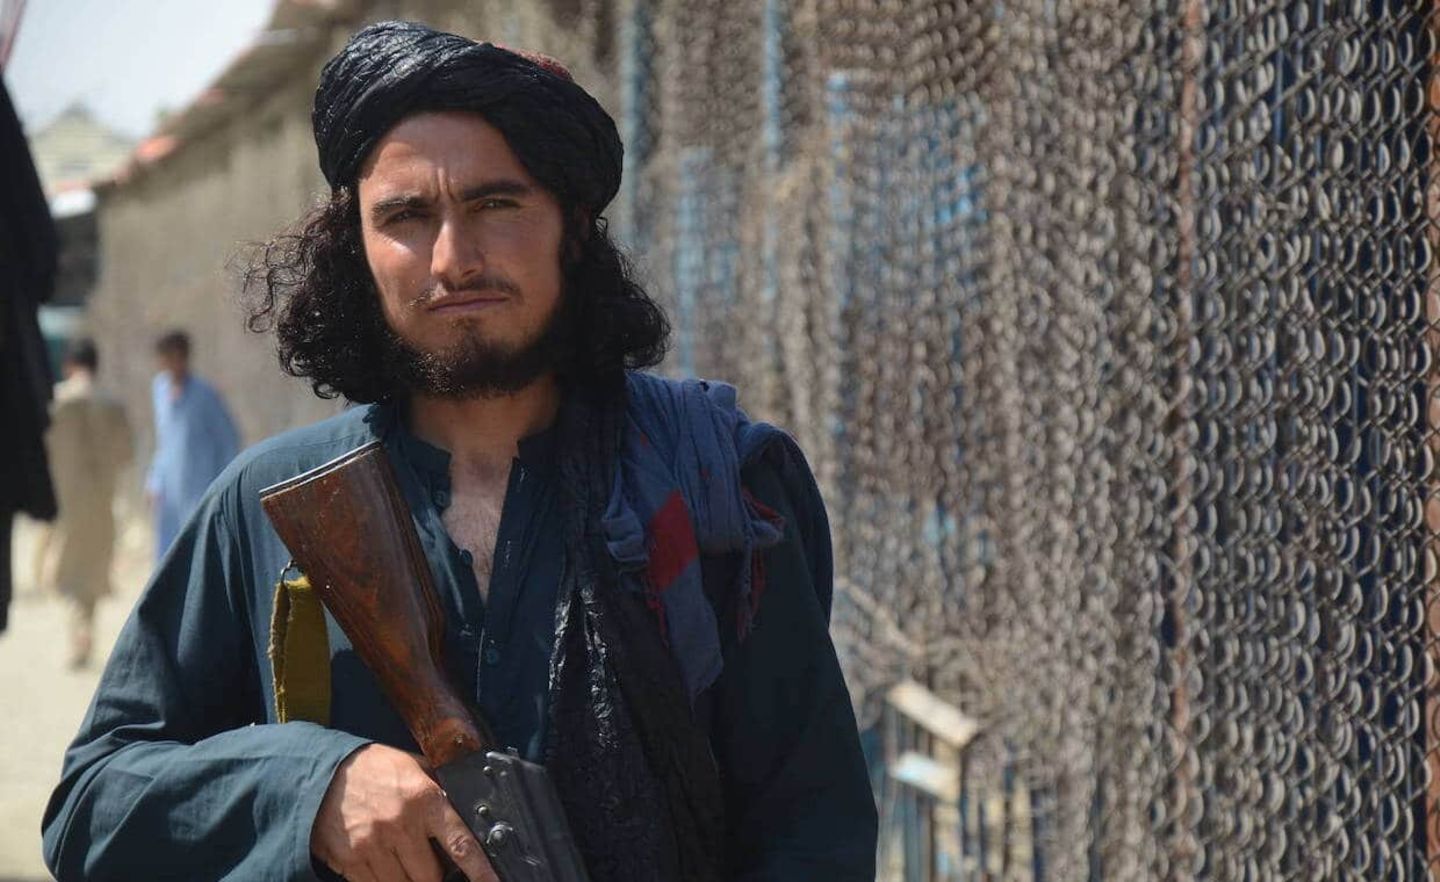 Ein Taliban-Kämpfer an der Grenze zu Pakistan. Je mehr Regionen und damit Grenzübergänge die Taliban kontrollierten, desto größer wurde ihre wirtschaftliche Potenz.